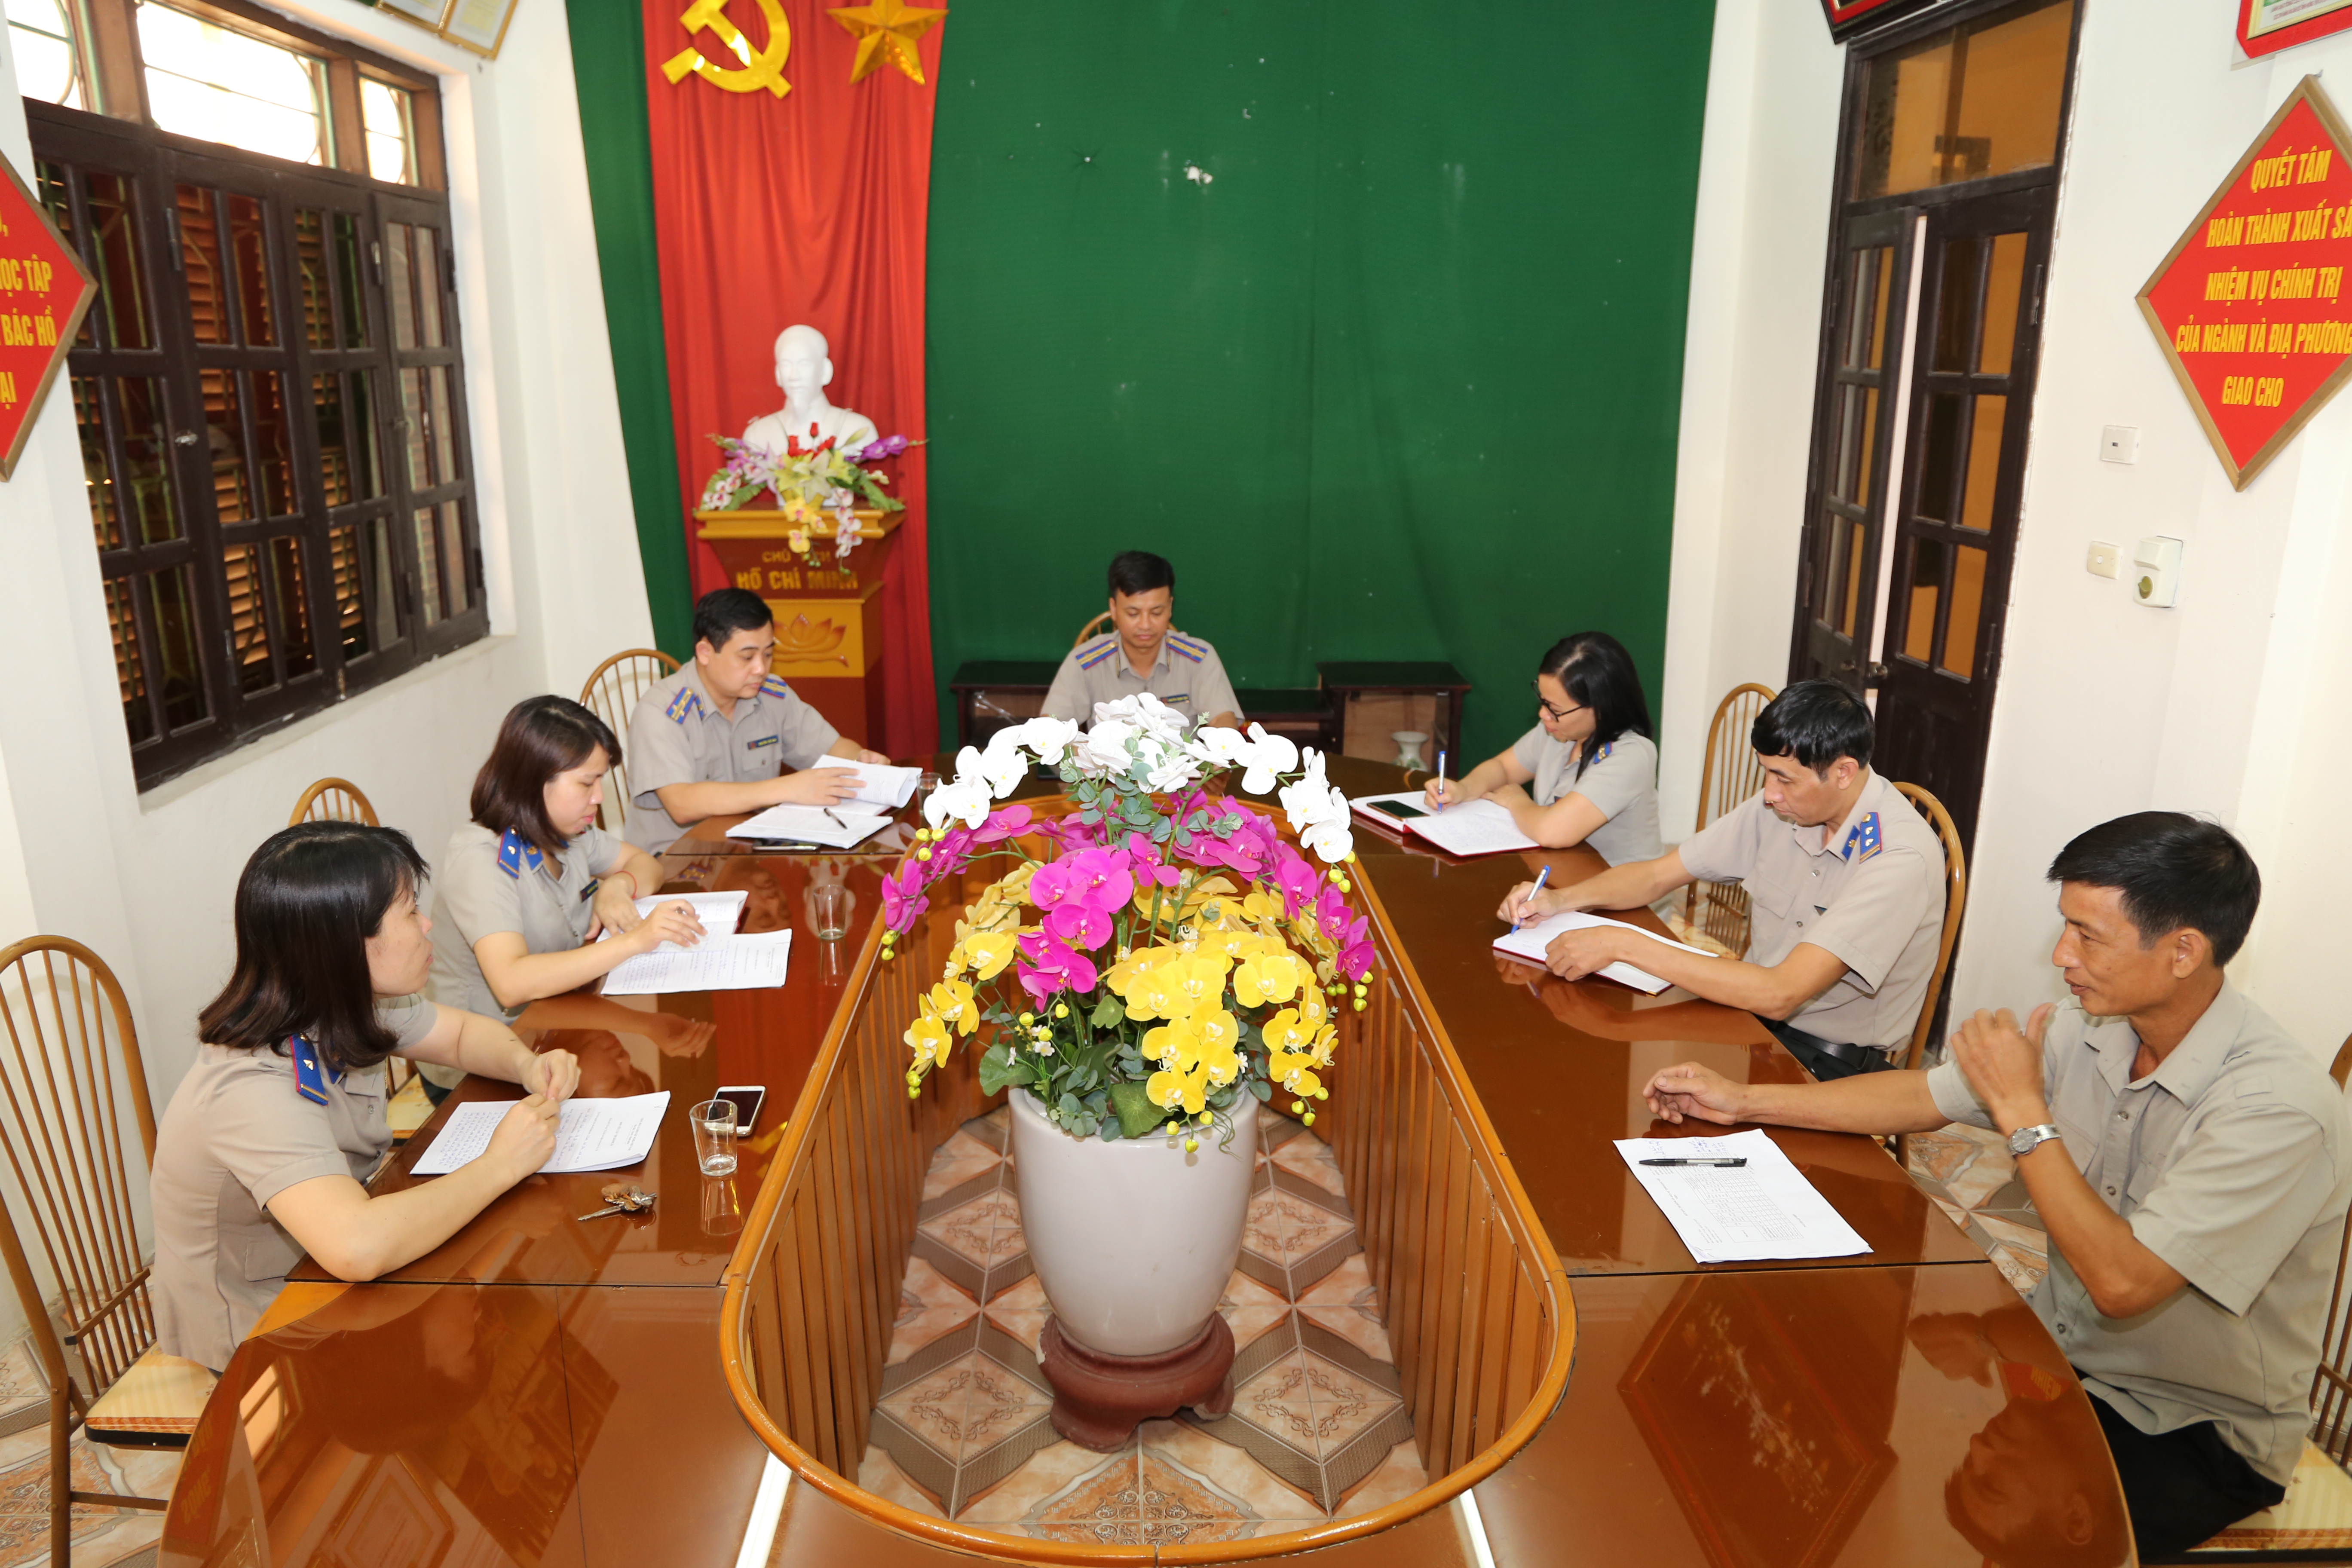 Chi cục Thi hành án dân sự huyện Ân Thi, tỉnh Hưng Yên  triển khai thực hiện nhiều giải pháp nâng cao hiệu quả  công tác thi hành án dân sự